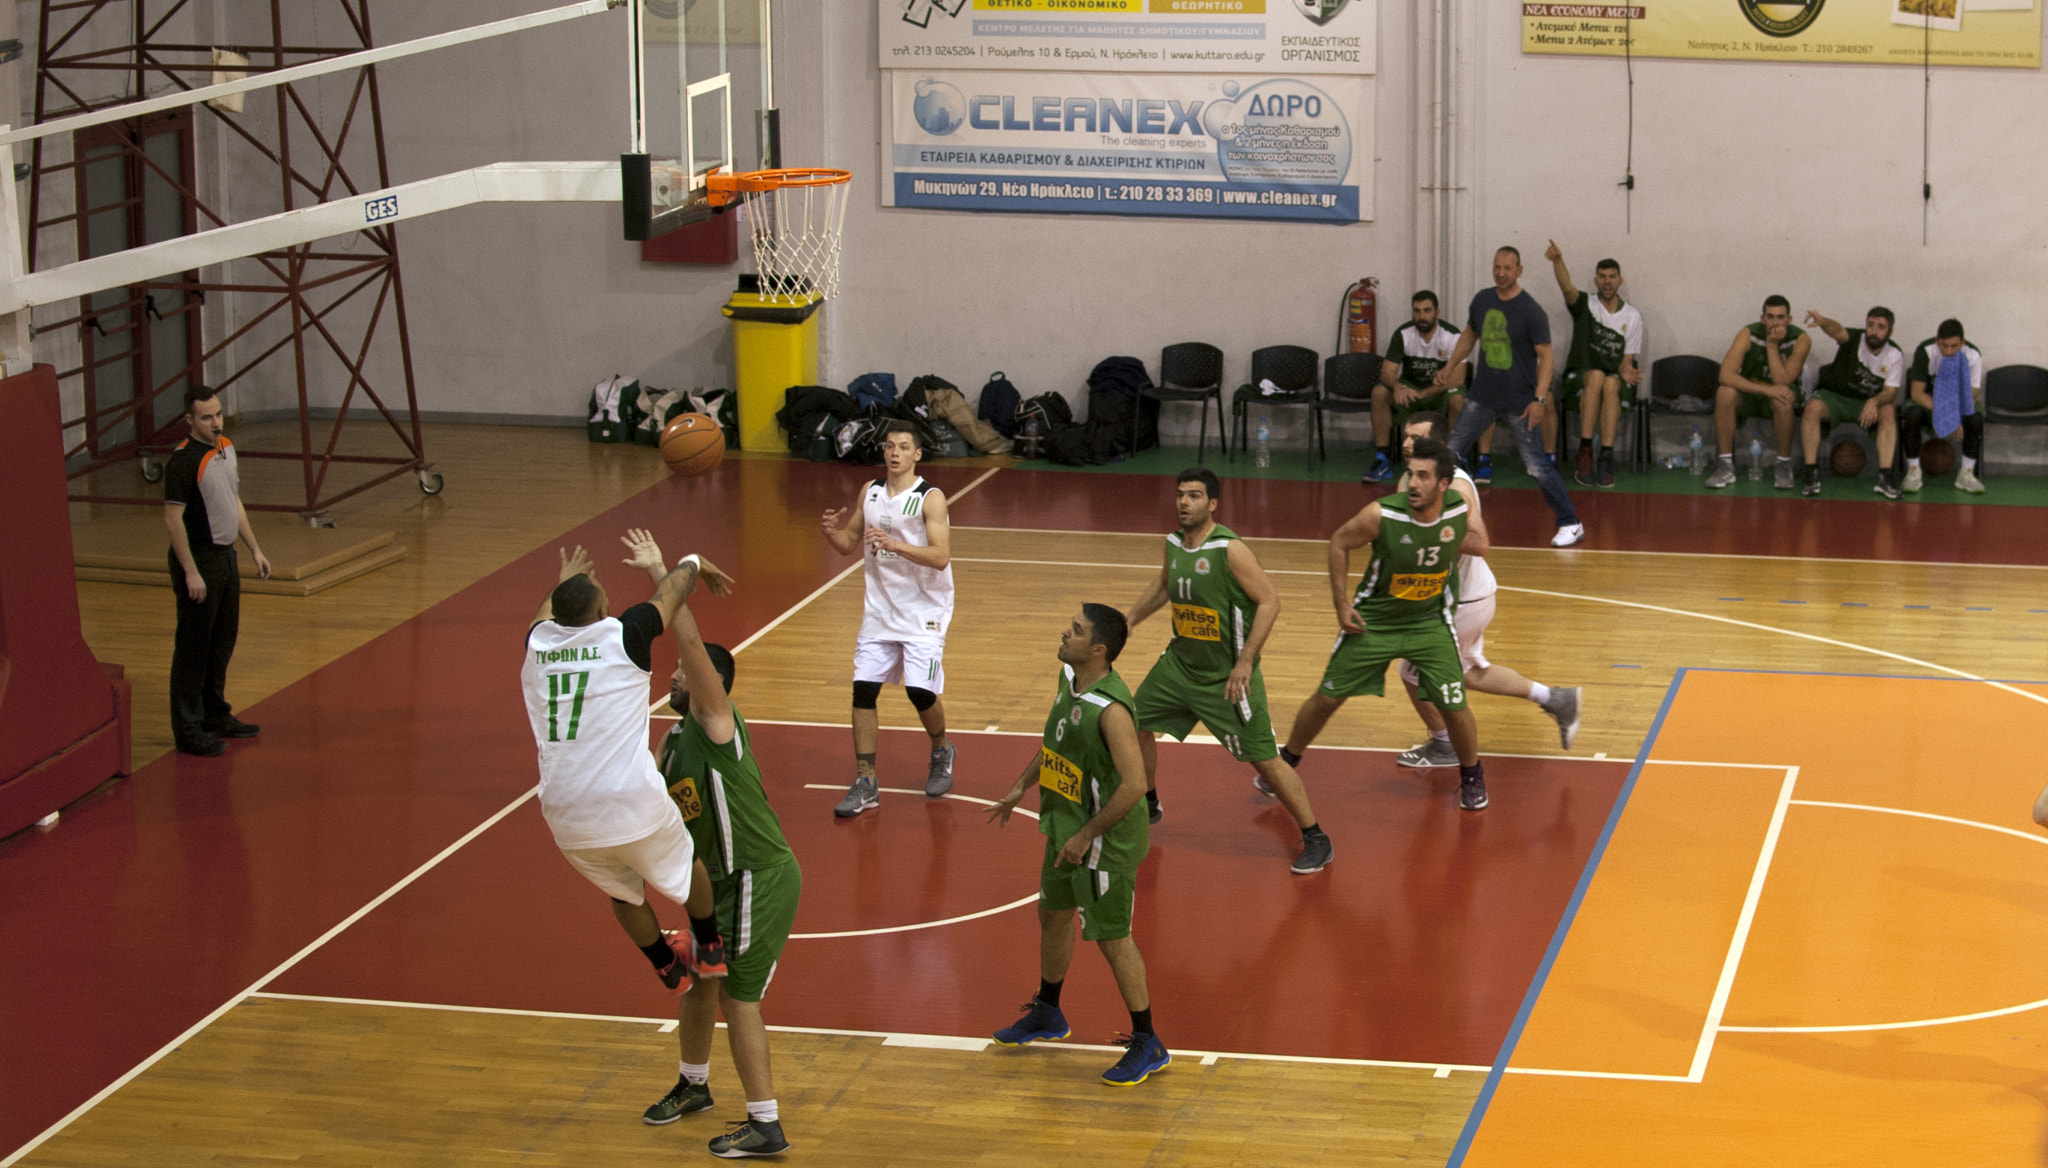 Nikon D60 sample photo. Ilion vs iraklion basketball game photography